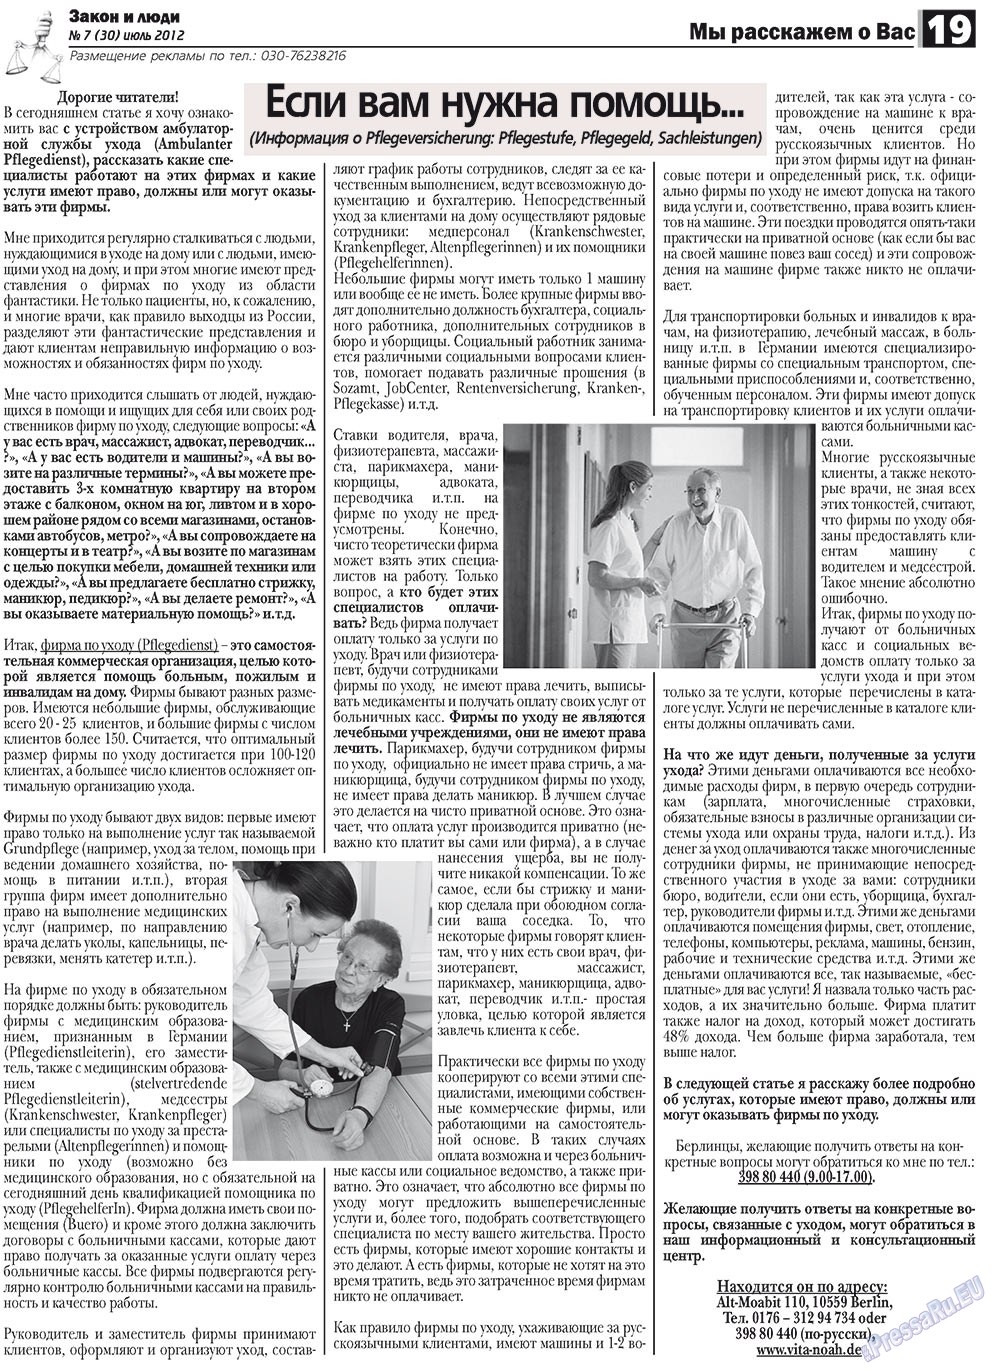 Закон и люди, газета. 2012 №7 стр.19